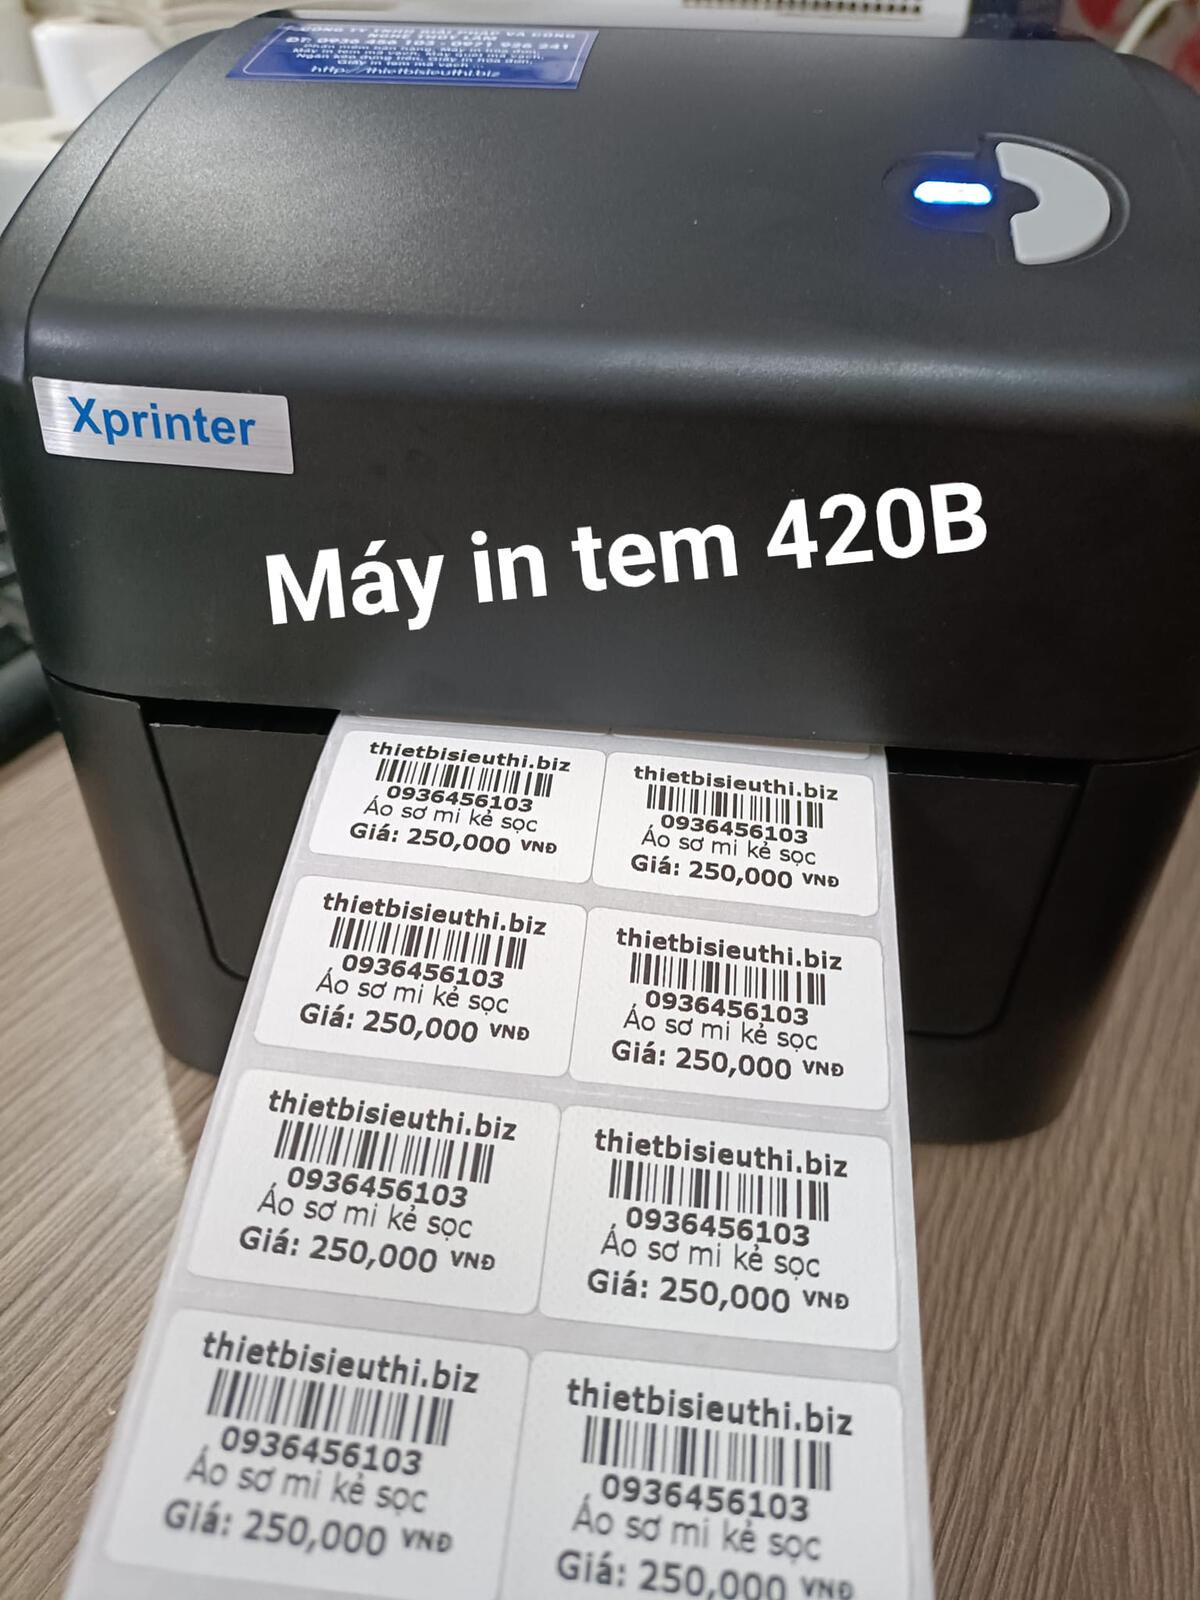 Các lỗi thường gặp khi cài đặt máy in nhiệt xprinter 420b và cách khắc phục?
